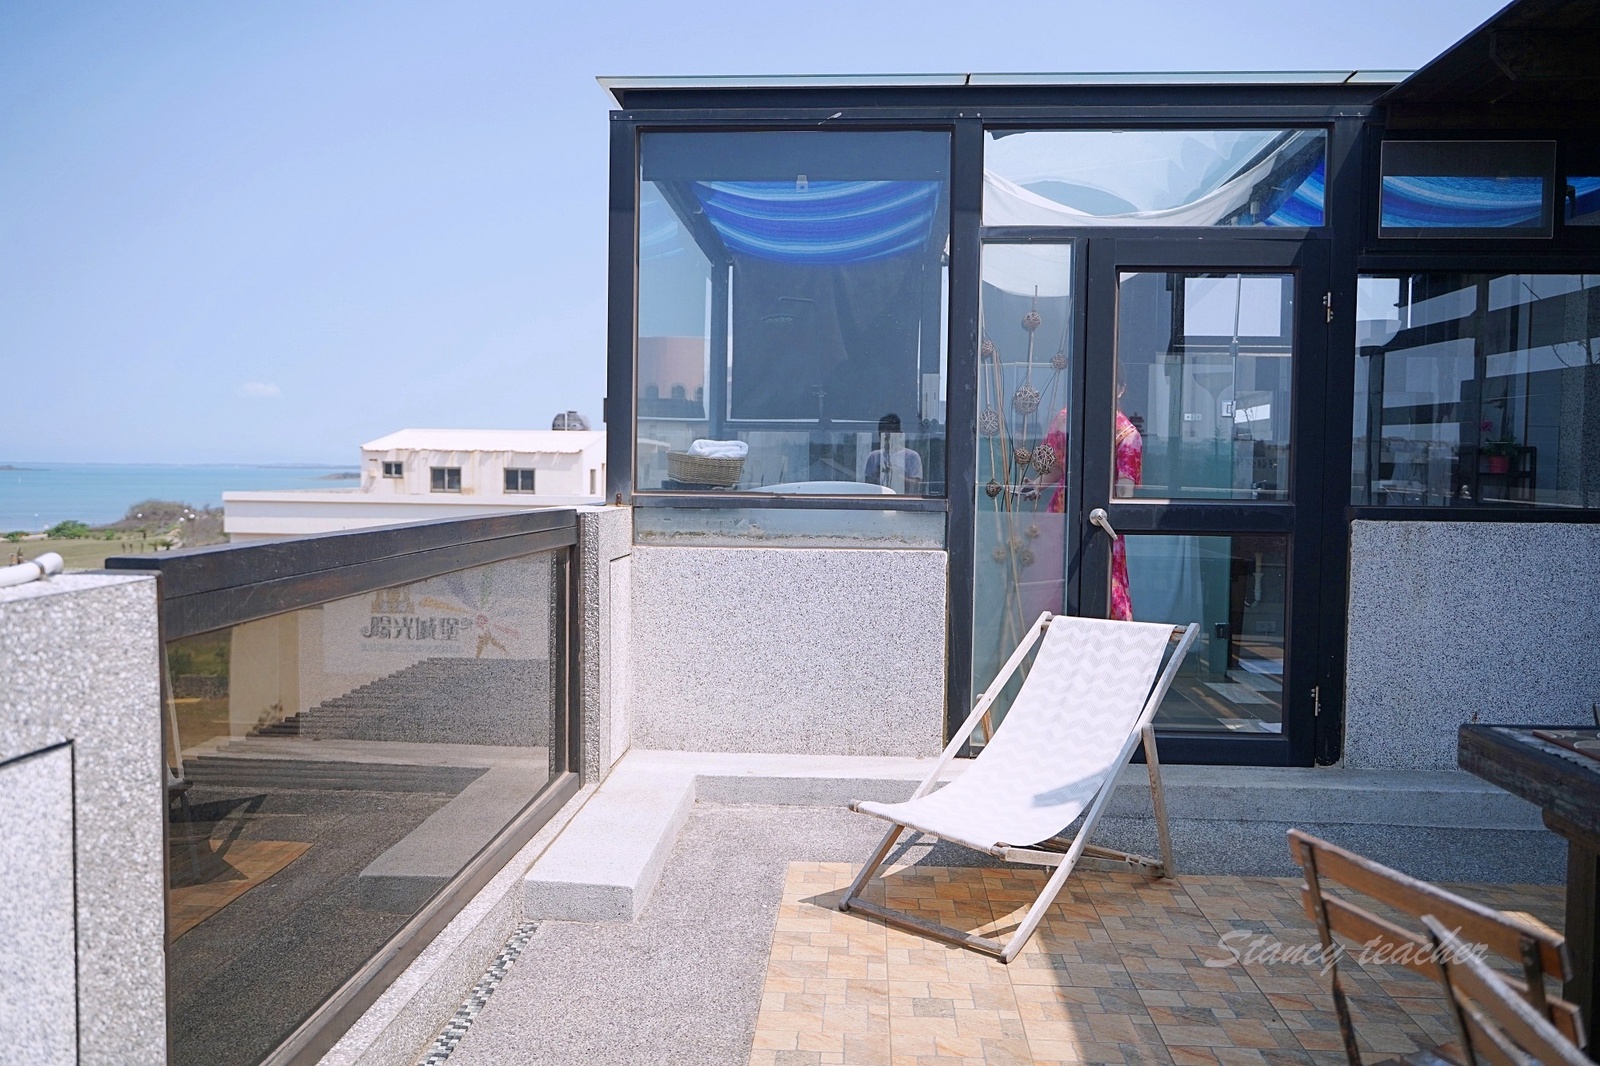 澎湖 – 馬里布海景民宿 | 樓中樓房型 | 大浴缸泡澡看夕陽西下超放鬆